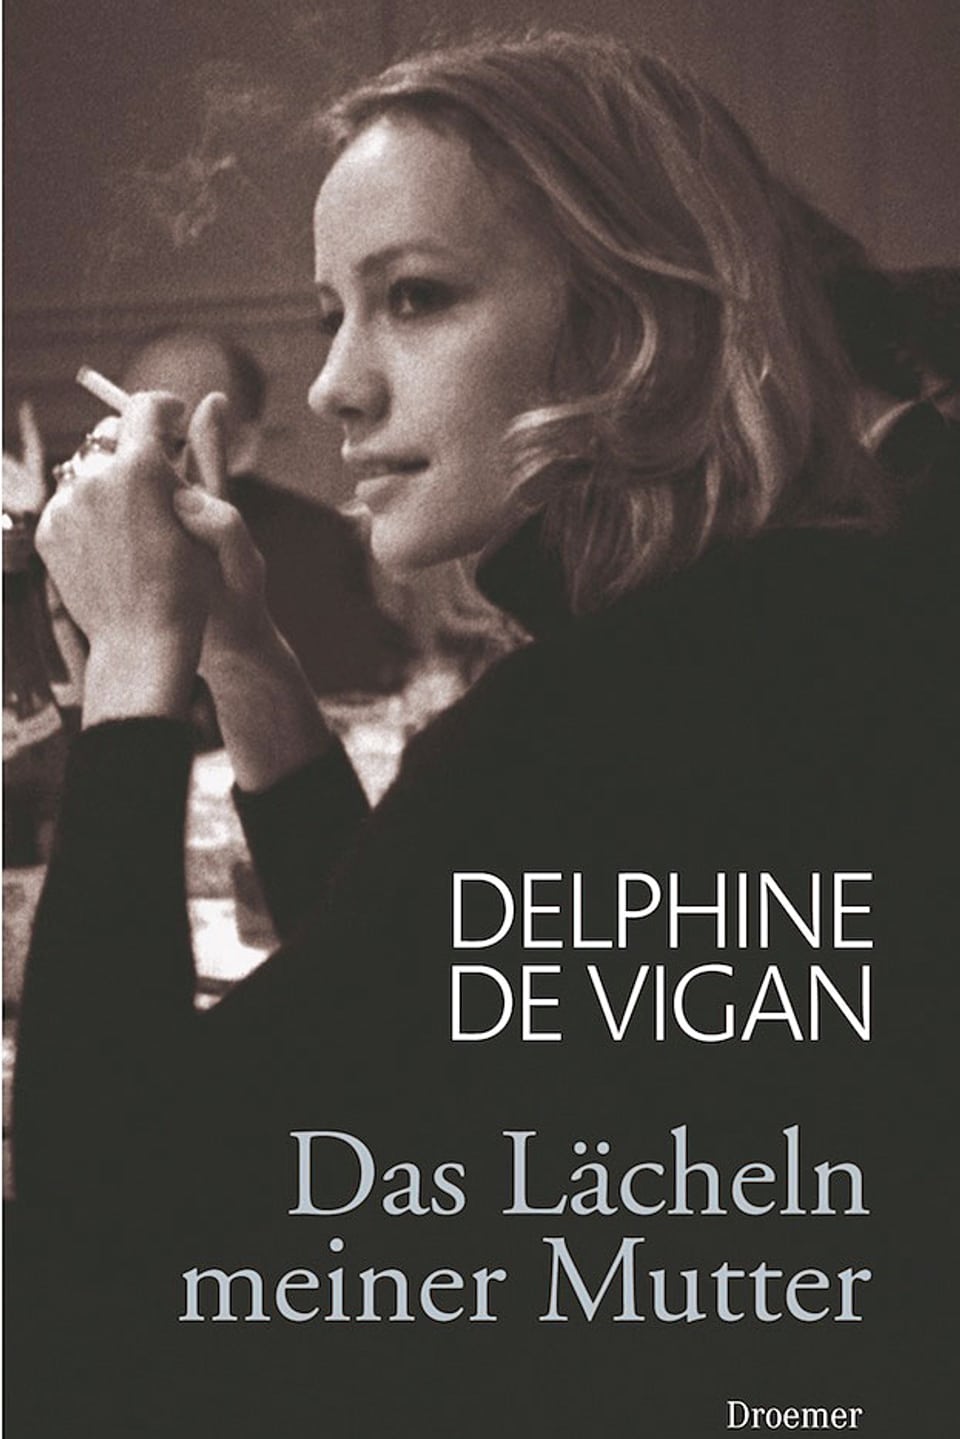 Das Cover des Buches mit dem Bild der Mutter im seitlichen Profil, Zigarette rauchend.